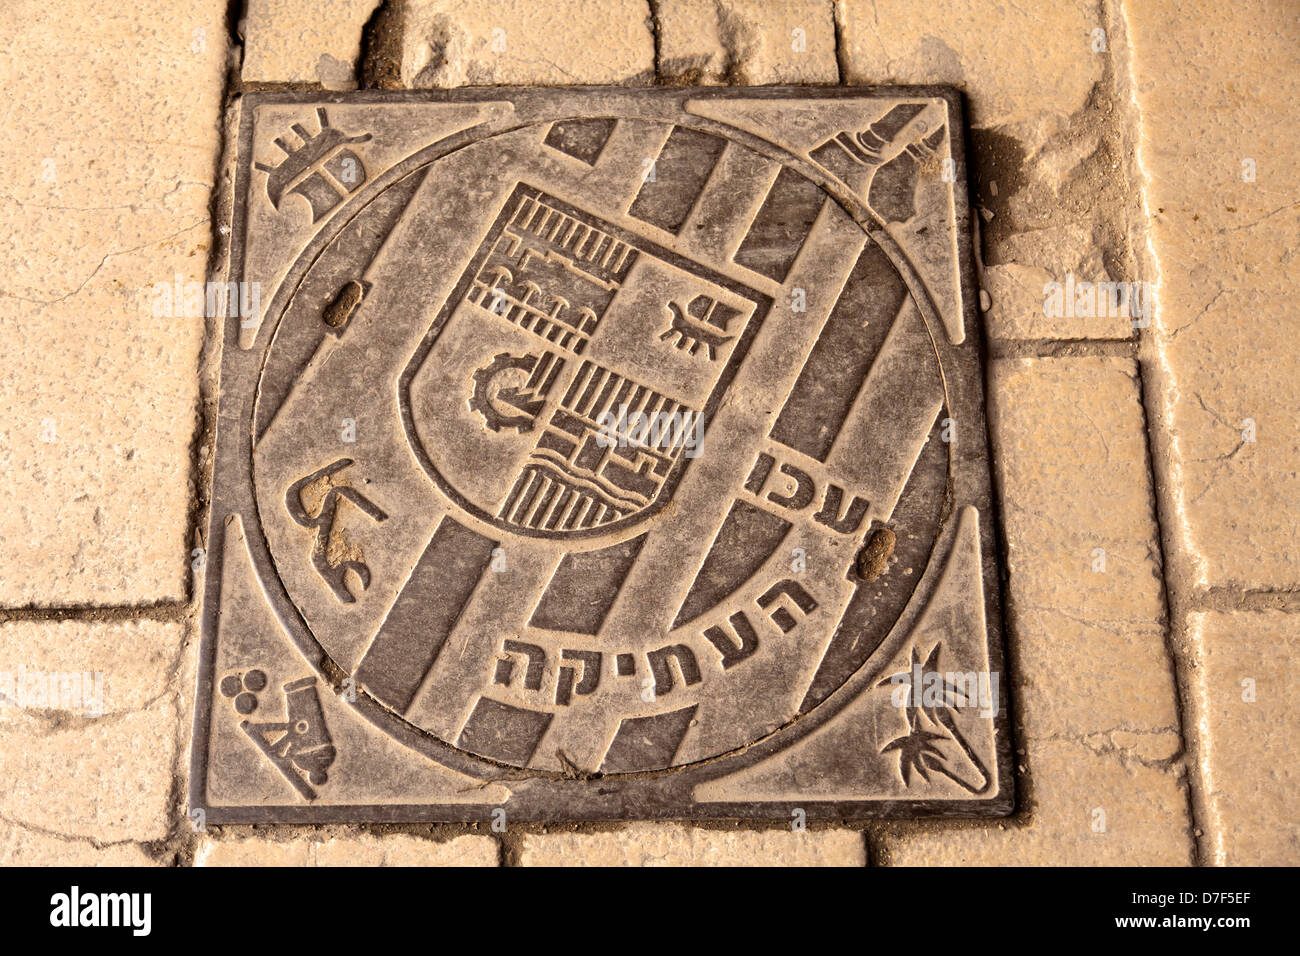 Couvercle d'égout emblème ancienne ville Acco (Acre en Israël) inscrits sur elle. texte en hébreu, arabe trnaslates à 'ancienne' Acco. Banque D'Images